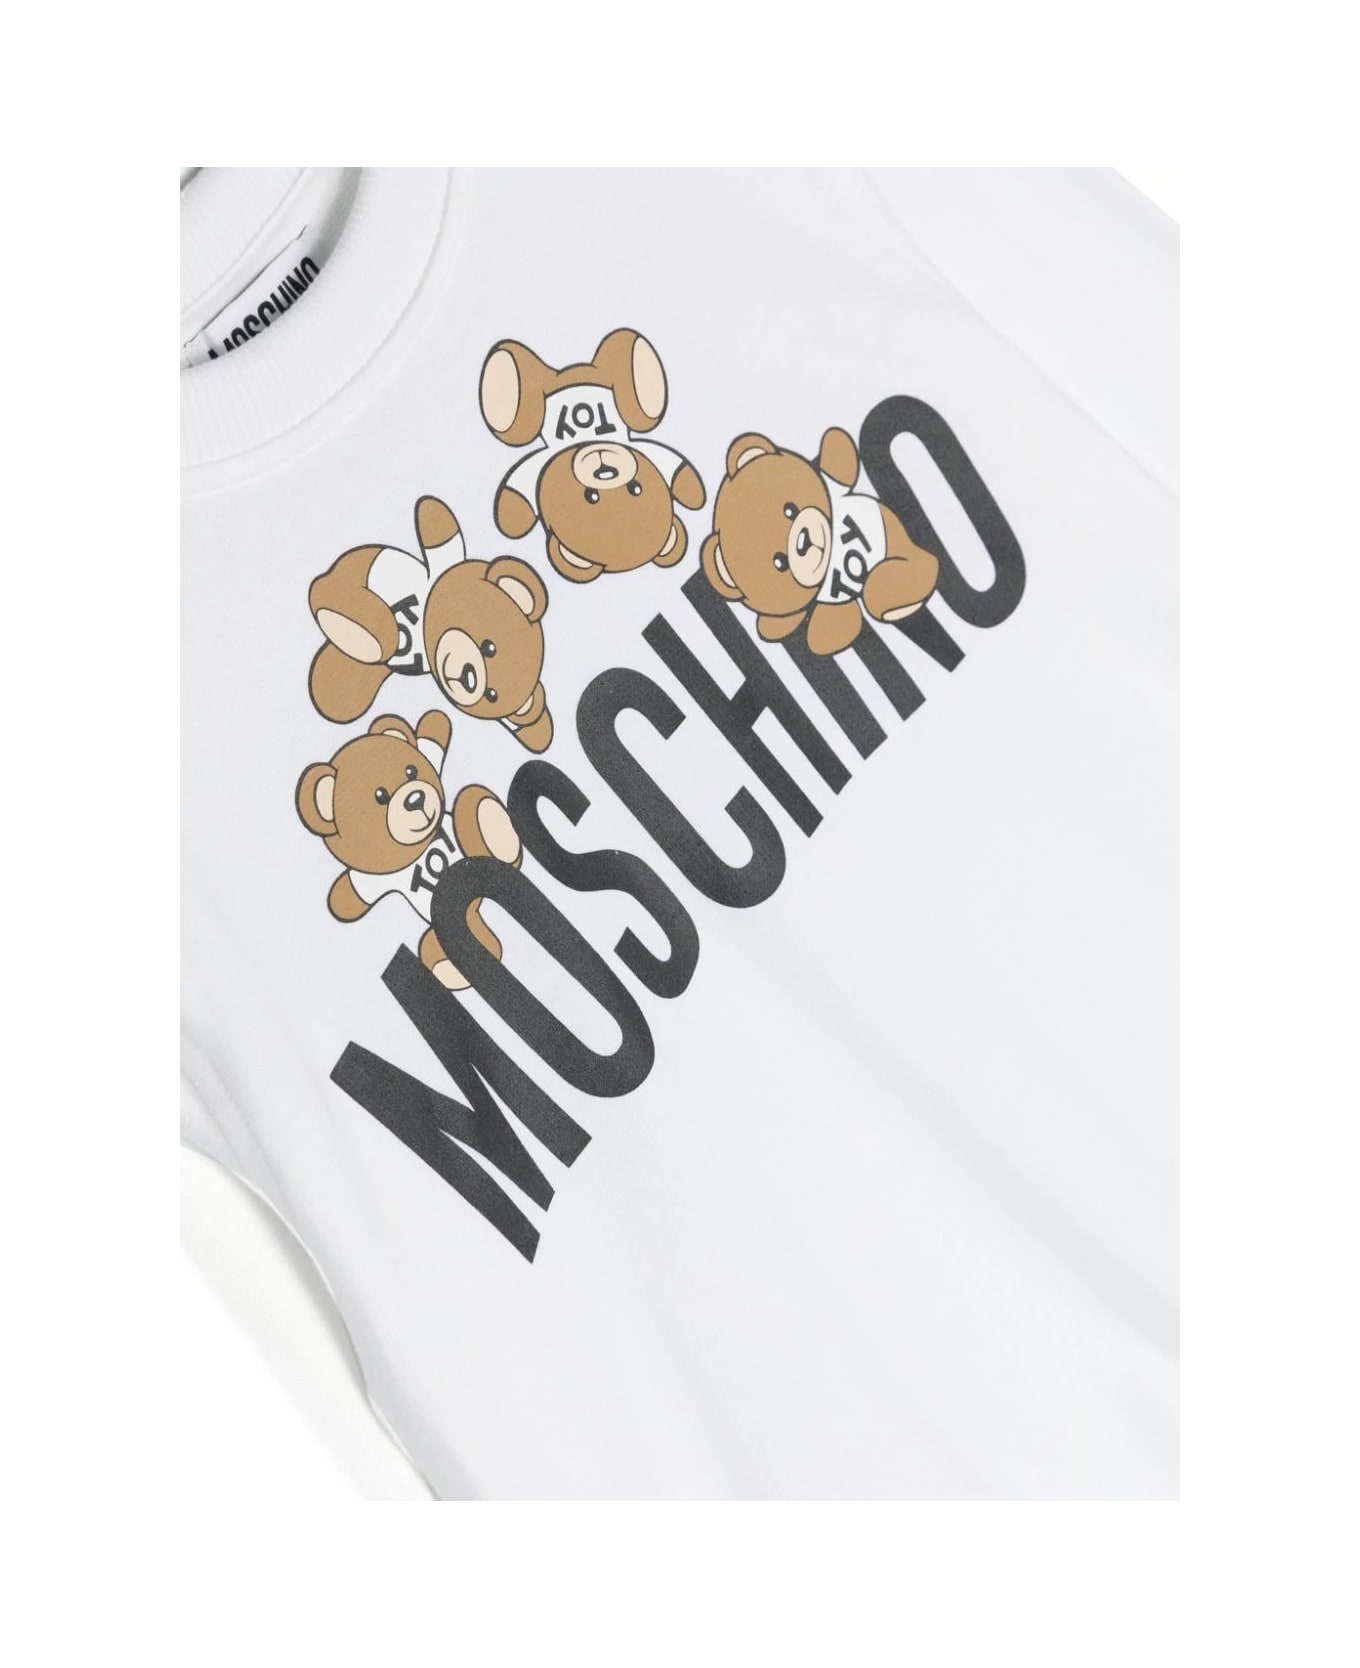 Moschino White Sweatshirt With Moschino Teddy Friends Print - White ニットウェア＆スウェットシャツ